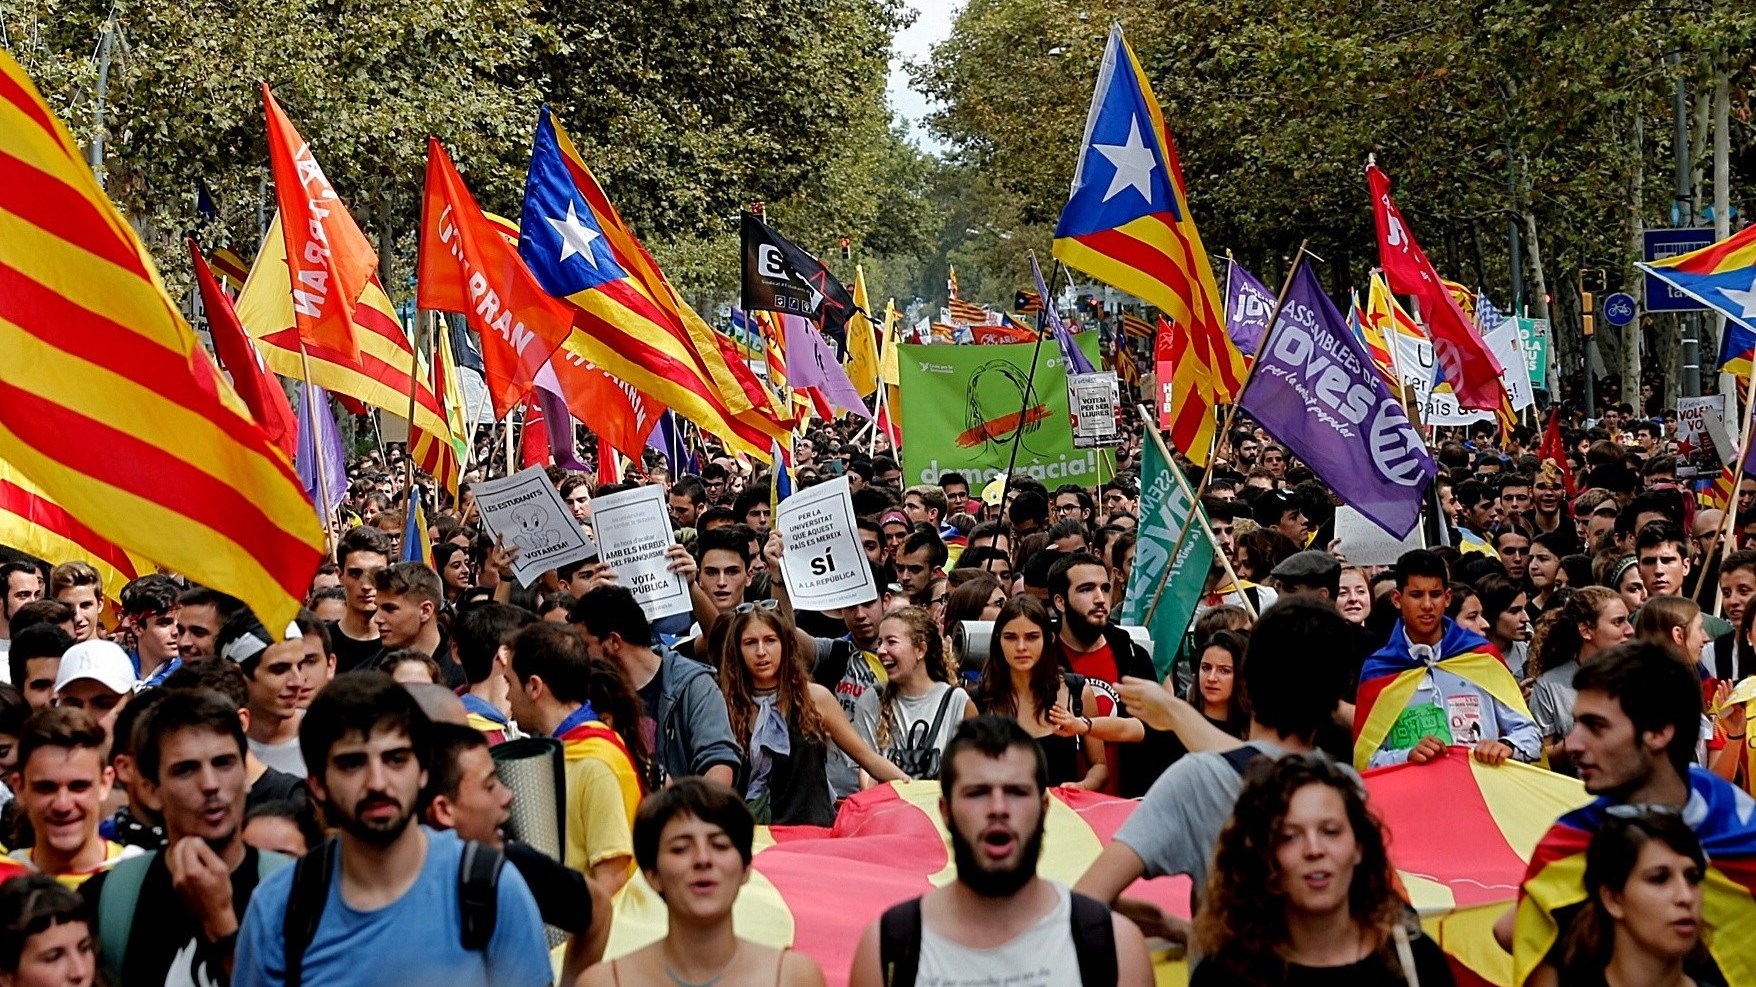 Δεν θα πραγματοποιηθεί το δημοψήφισμα της Καταλονίας, δήλωσε ο κυβερνητικός εκπρόσωπος